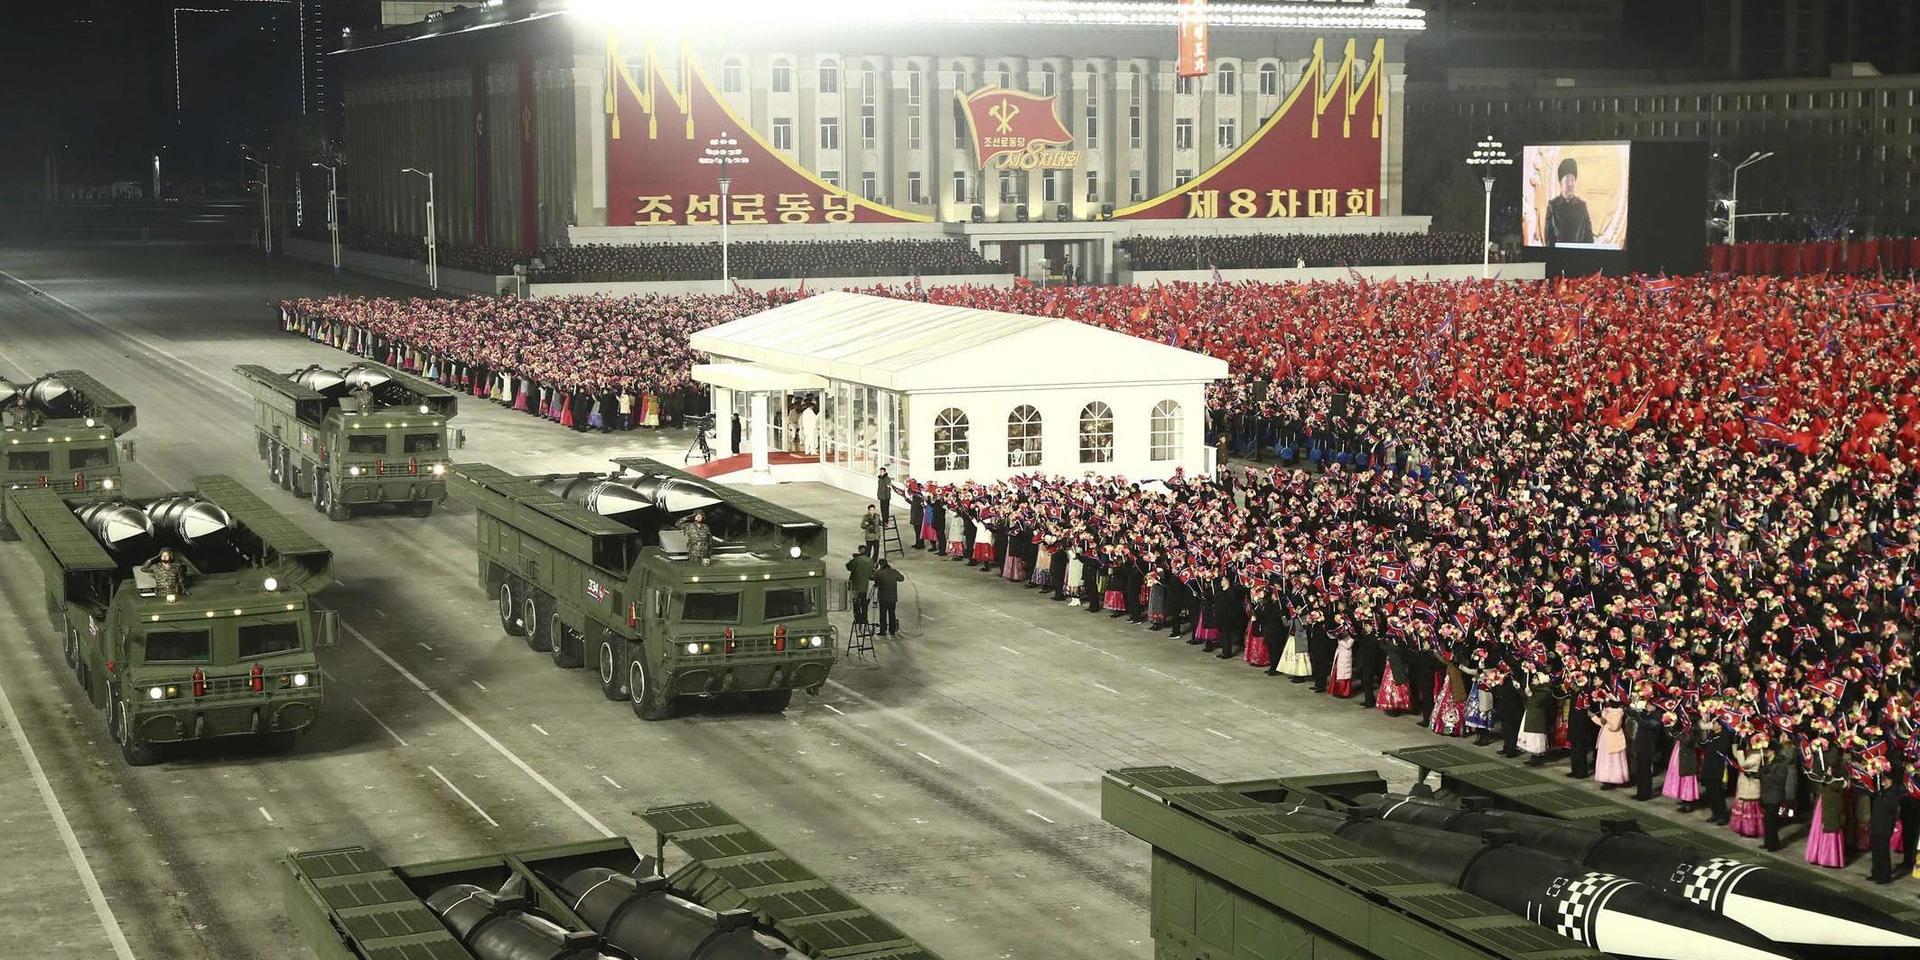 Vid den stora militärparaden i Pyongyang visades bland annat vad som uppges vara nya robotar upp. Bilden kommer från diktaturens nyhetsbyrå KCNA.